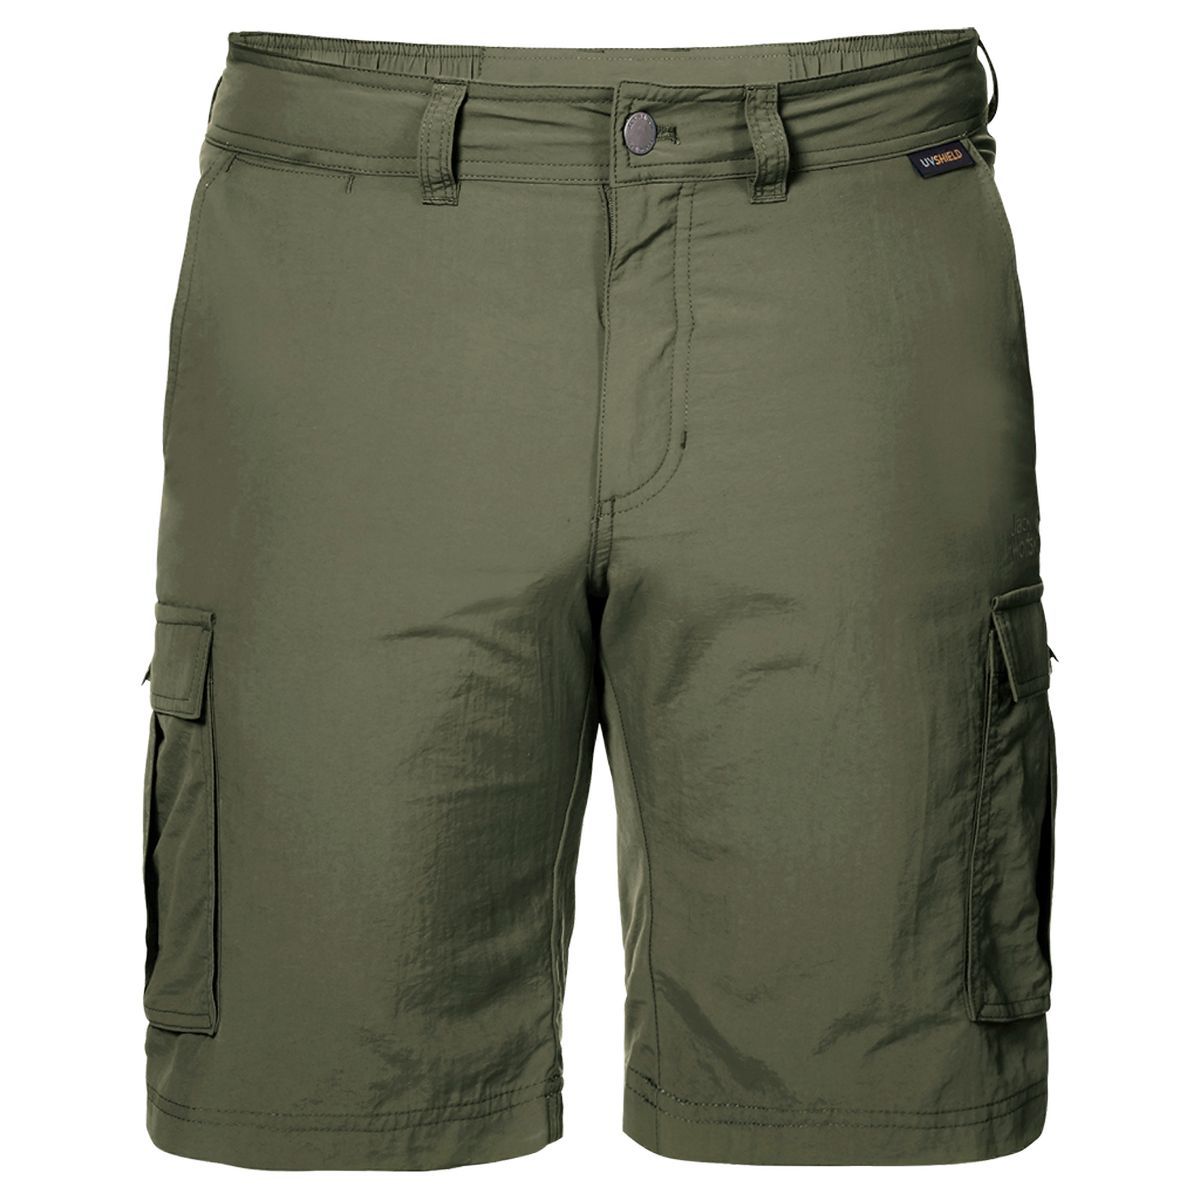   Jack Wolfskin Canyon Cargo Shorts, : . 1504201-5052.  56